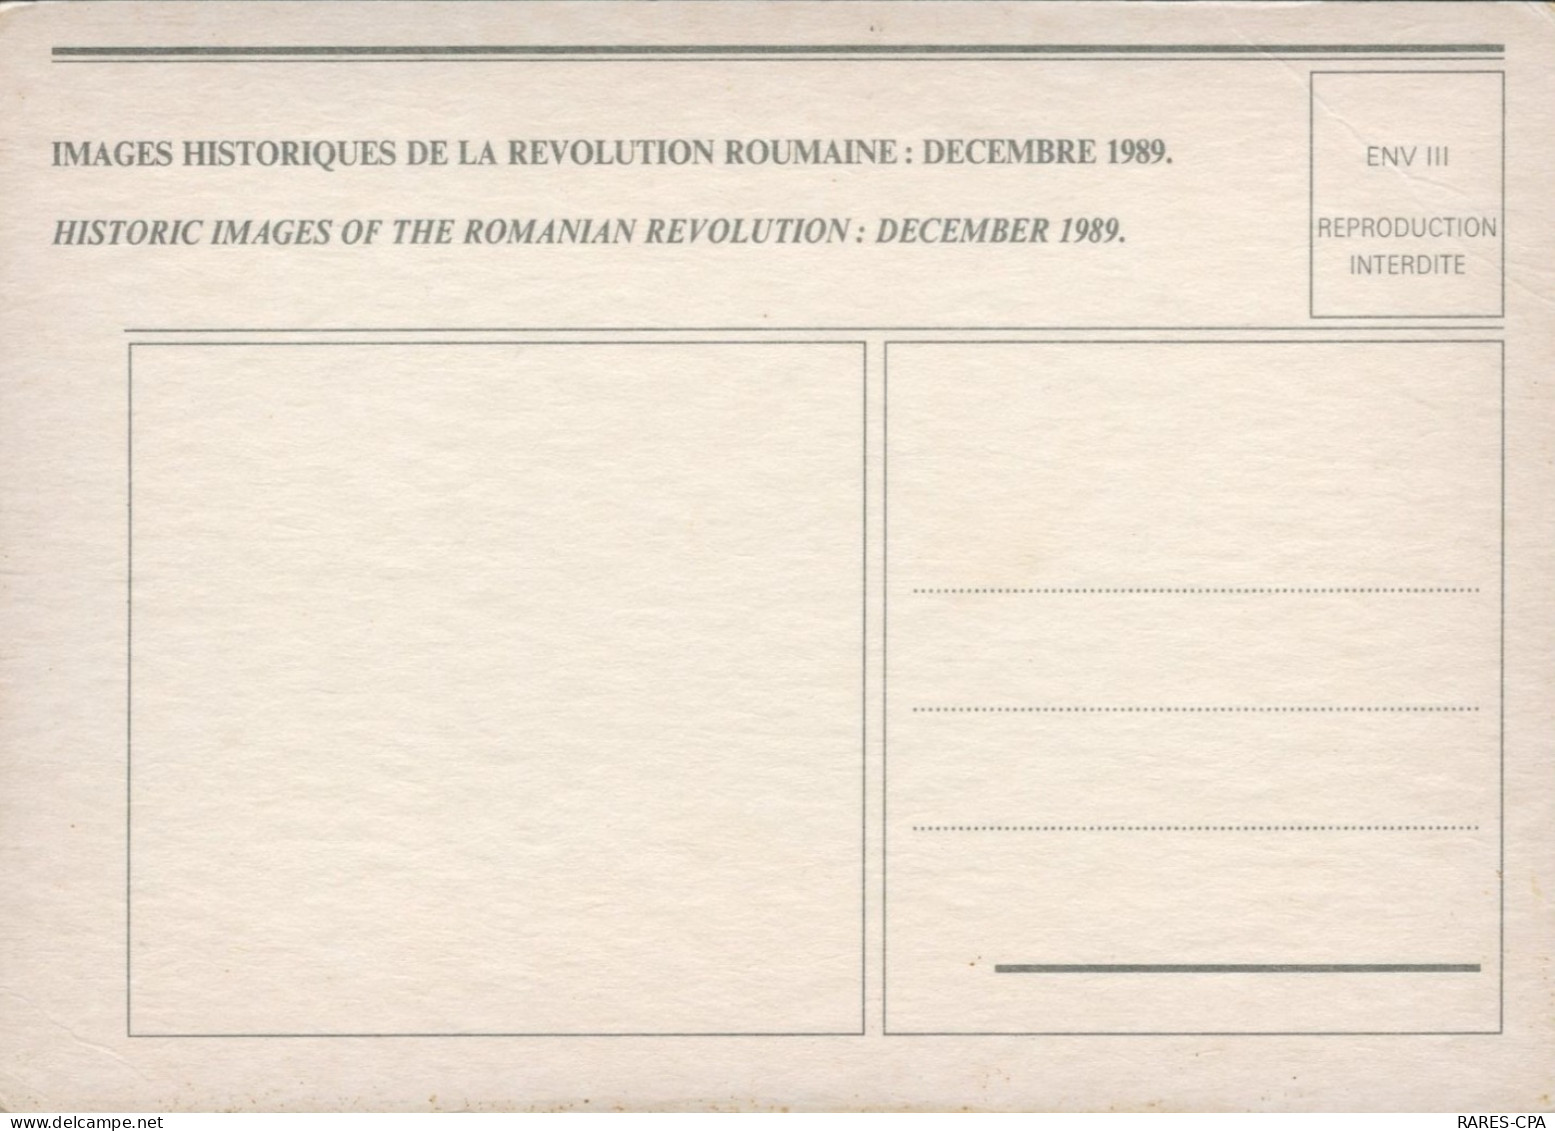 ROUMANIE - Lot de CPM : Historiques de la révolution ROUMAINE : Décembre 1989